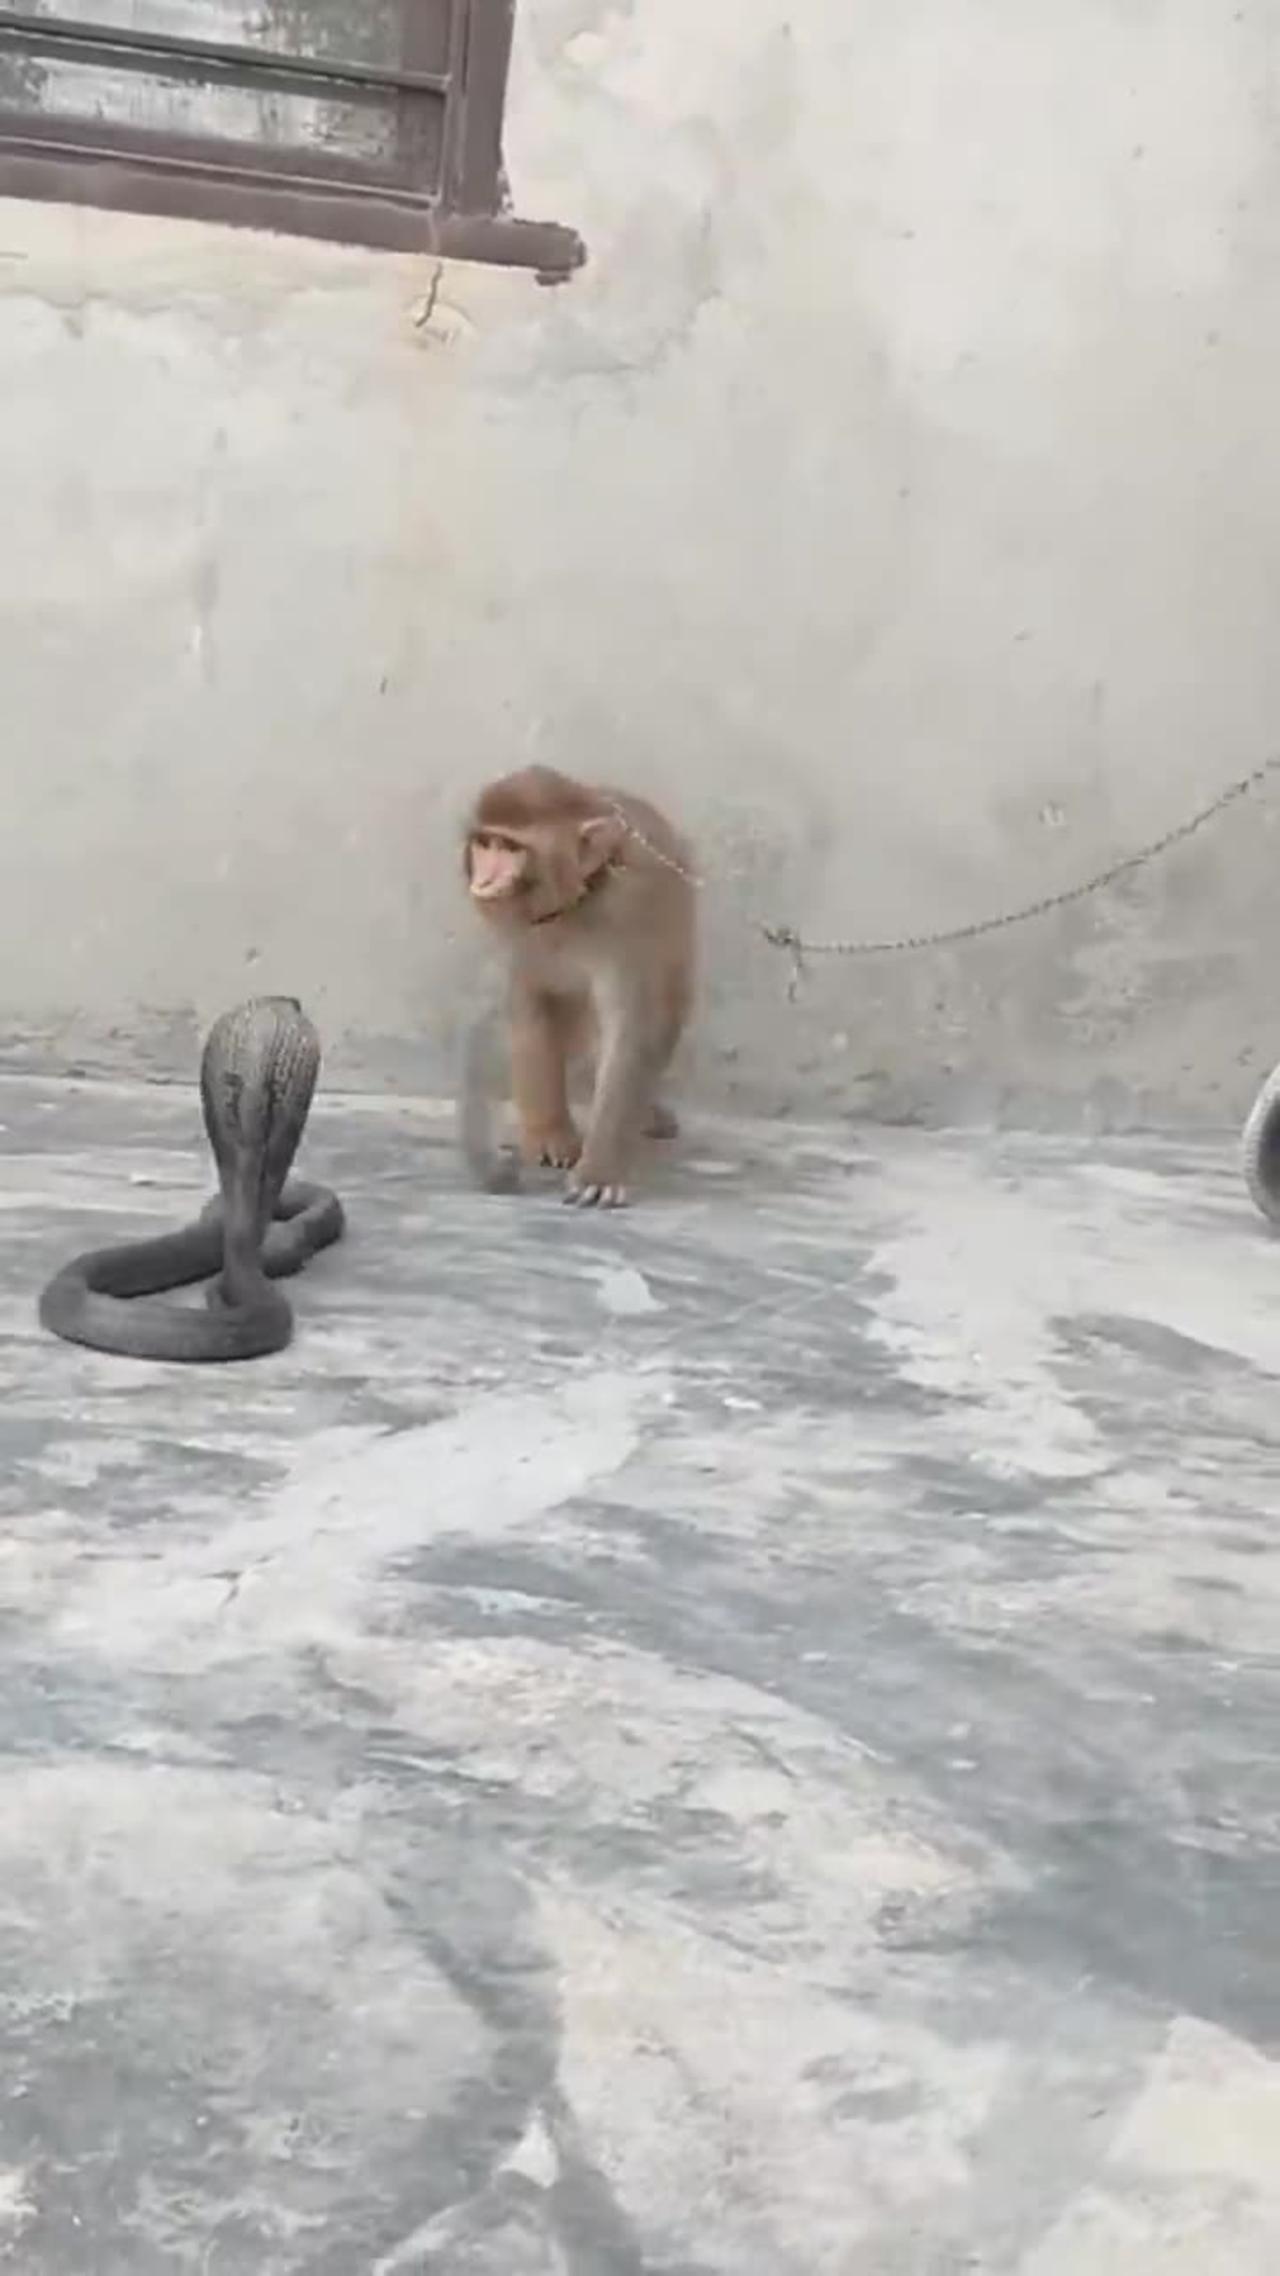 Two Big Black Cobra Sanke and monkey playing